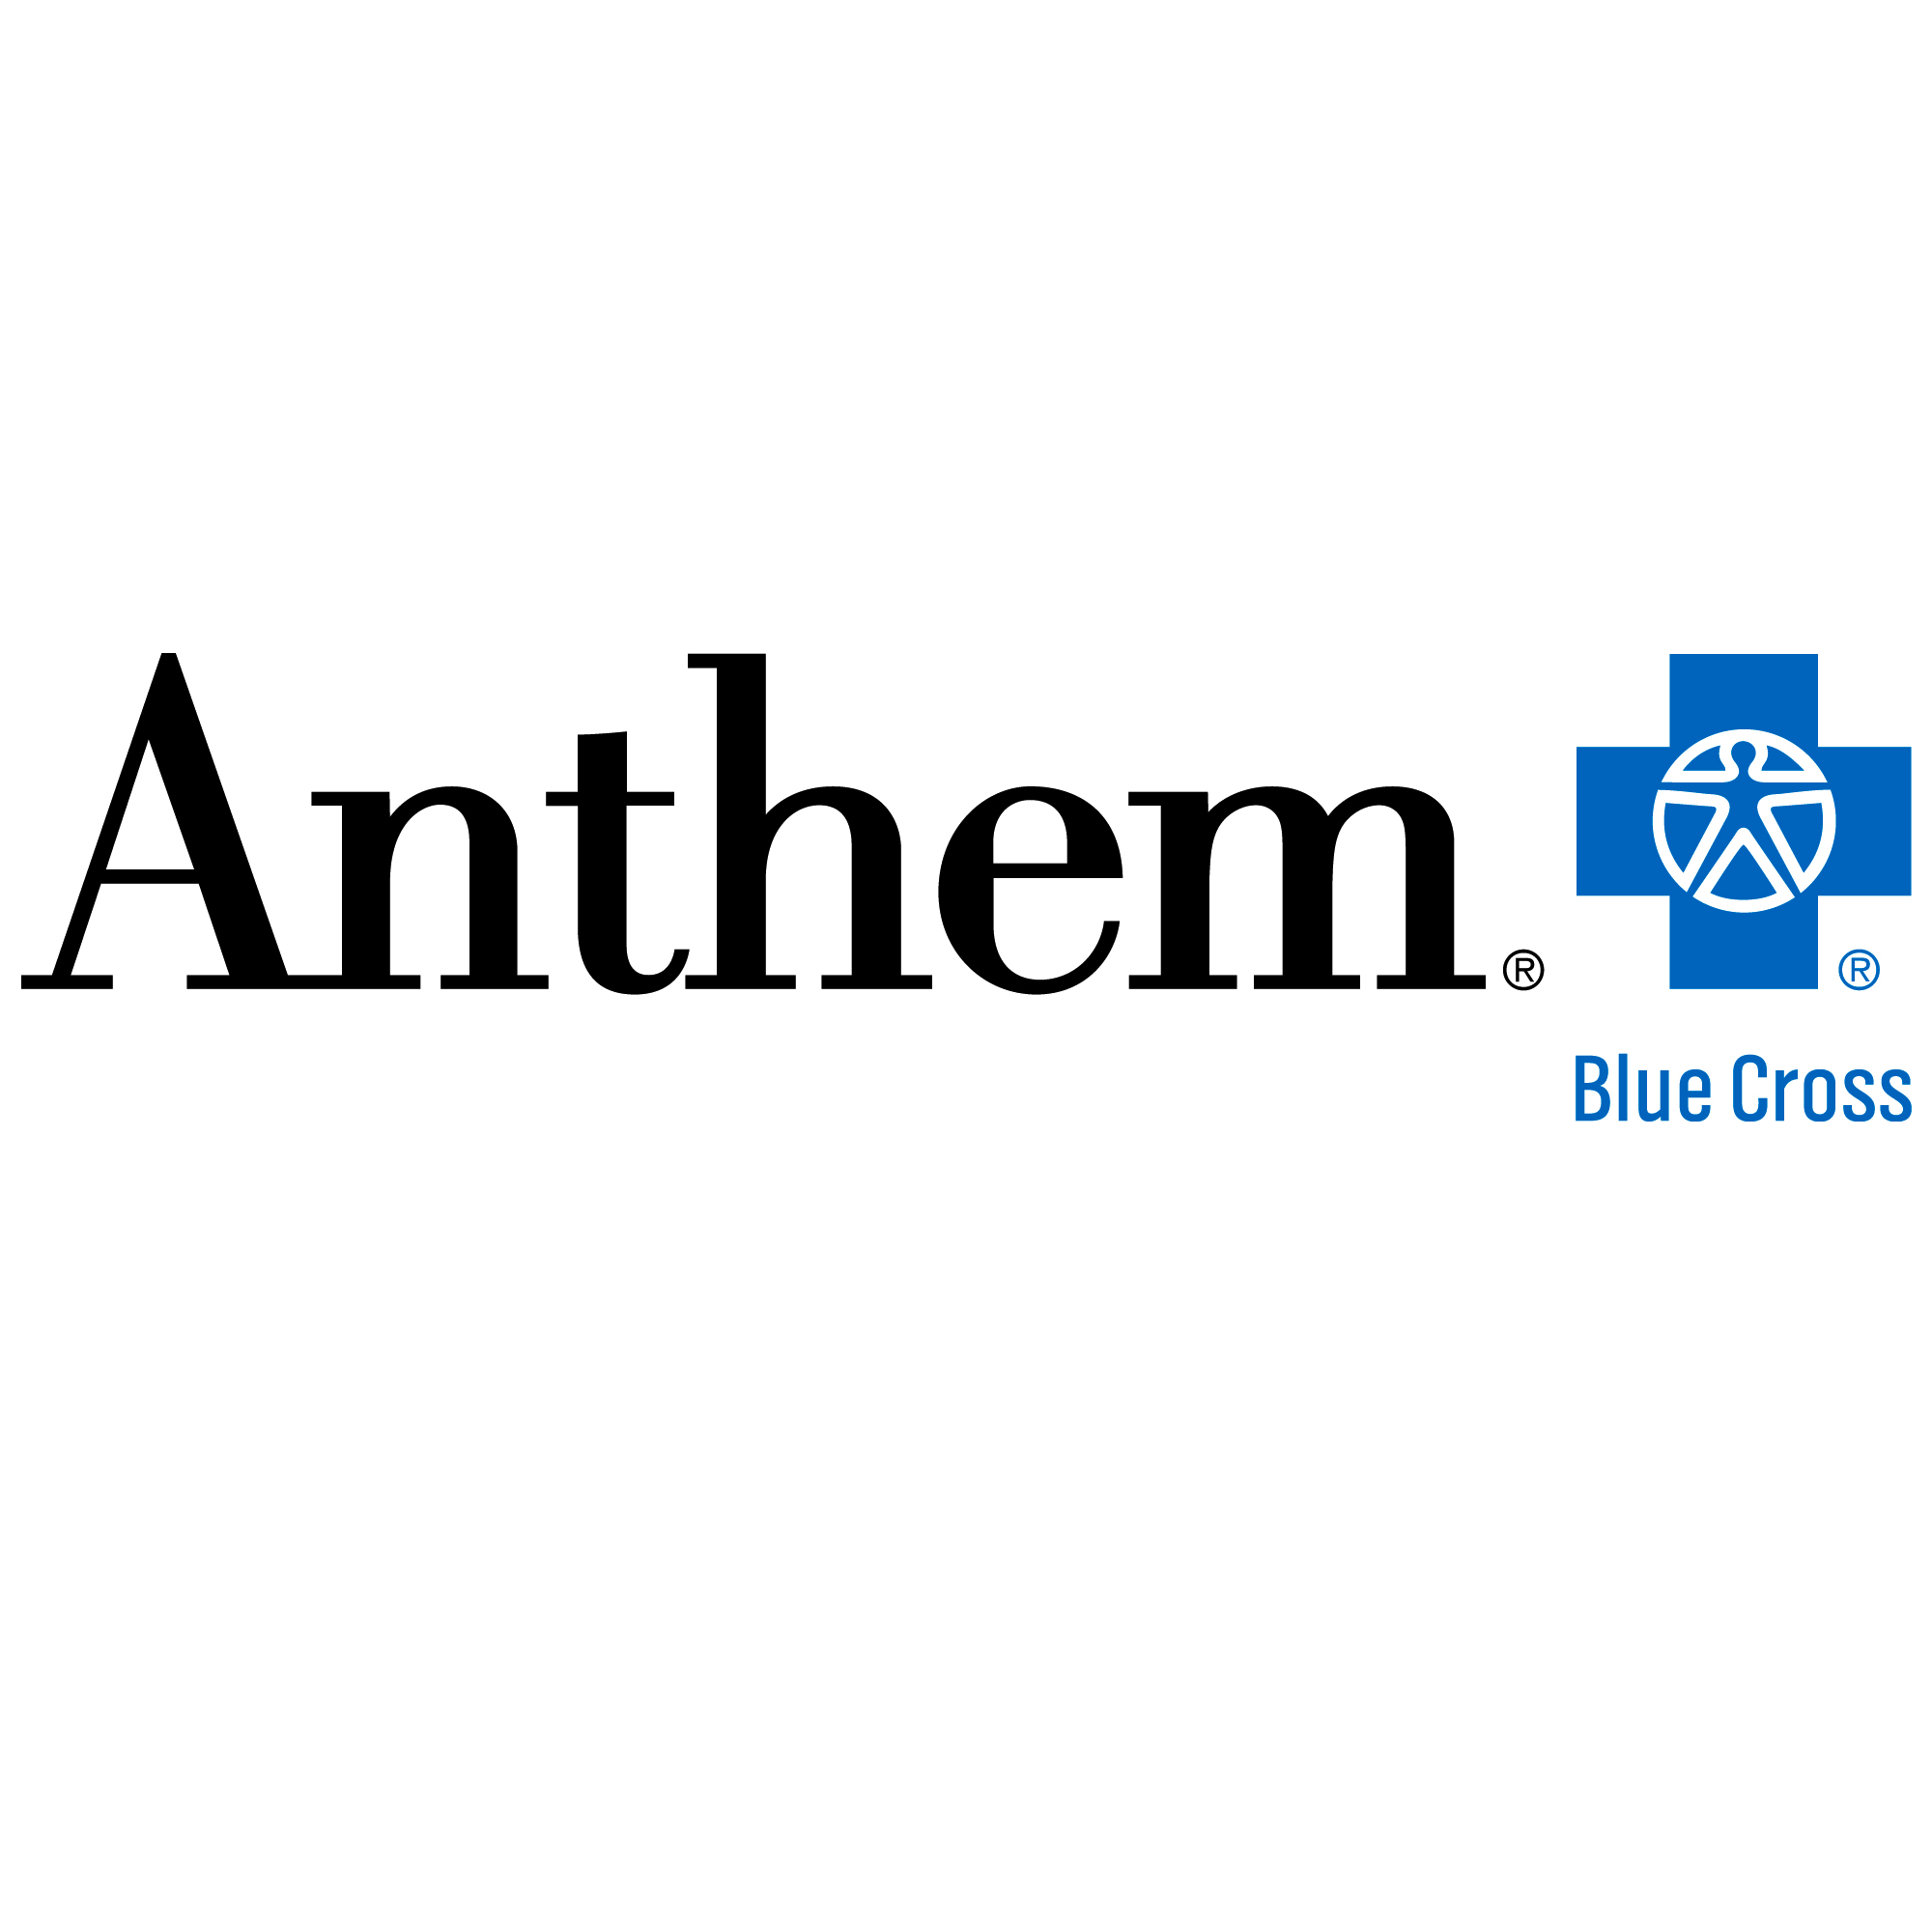 Anthem.com Logo - Anthem Blue Cross Claim Form Templates Fantastic Ca Forms For ...